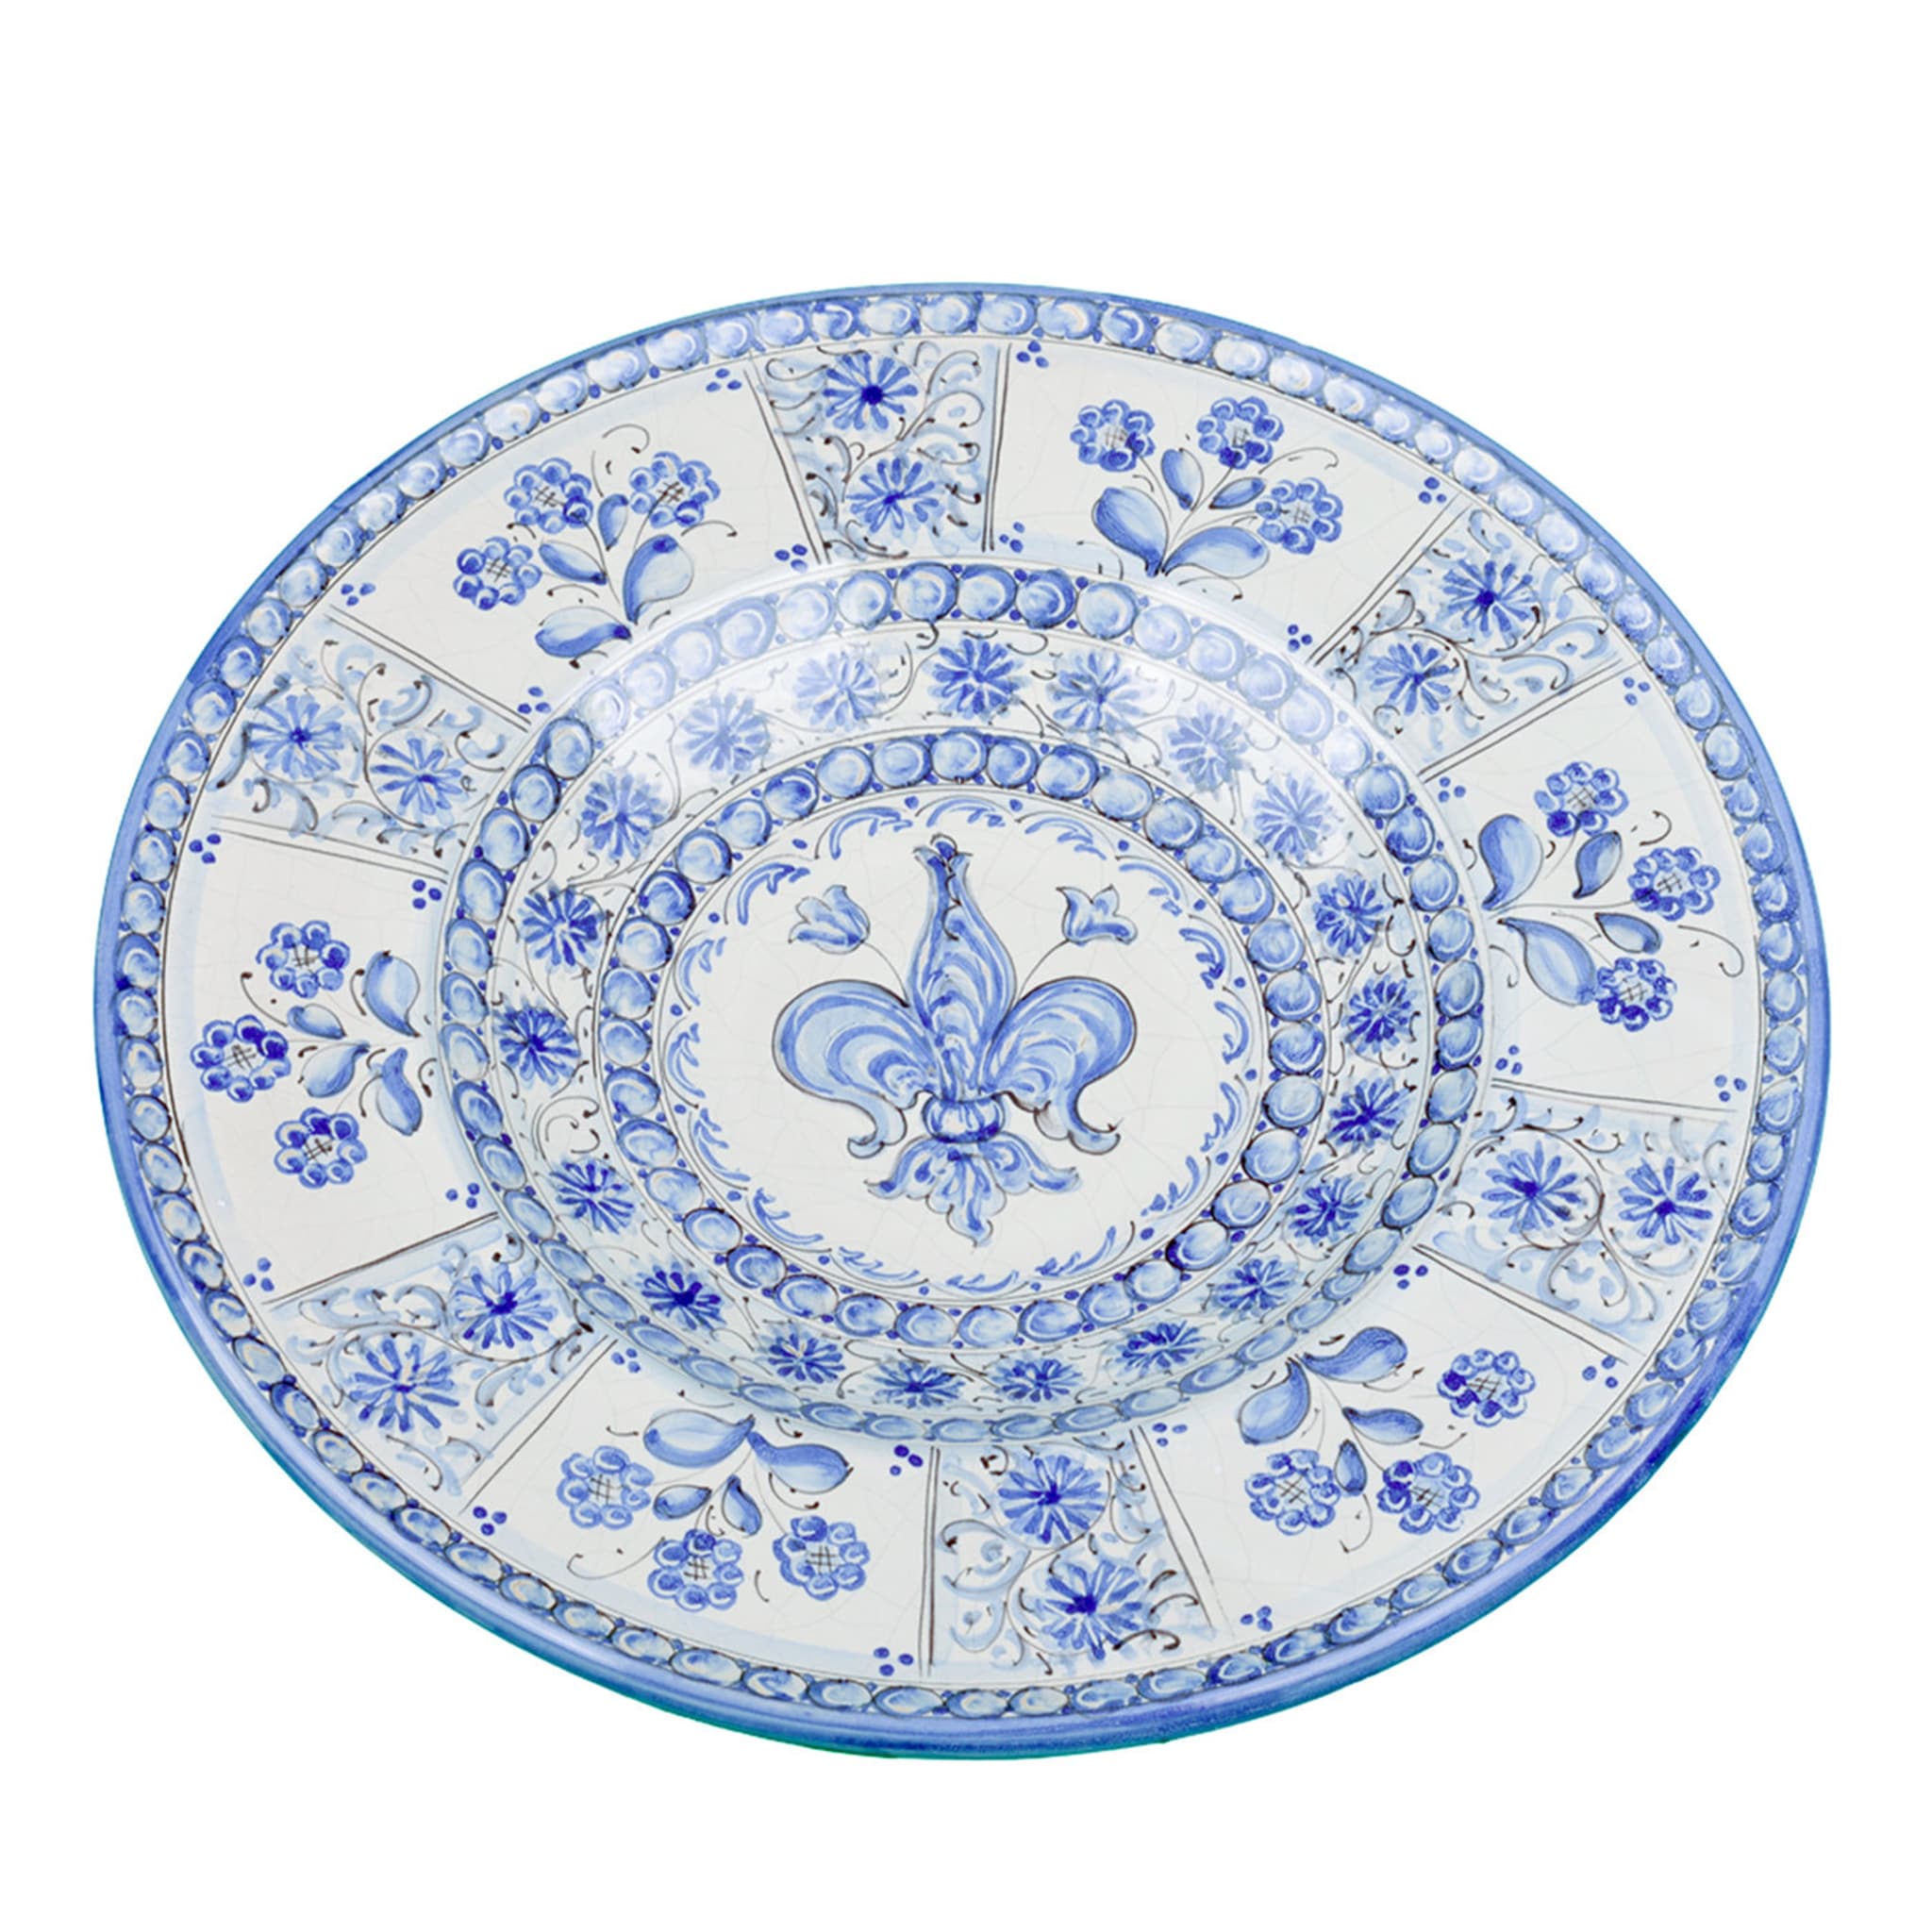 Blauer florentinischer flor-de-lis-dekorativer teller von Lorenza Adami - Hauptansicht